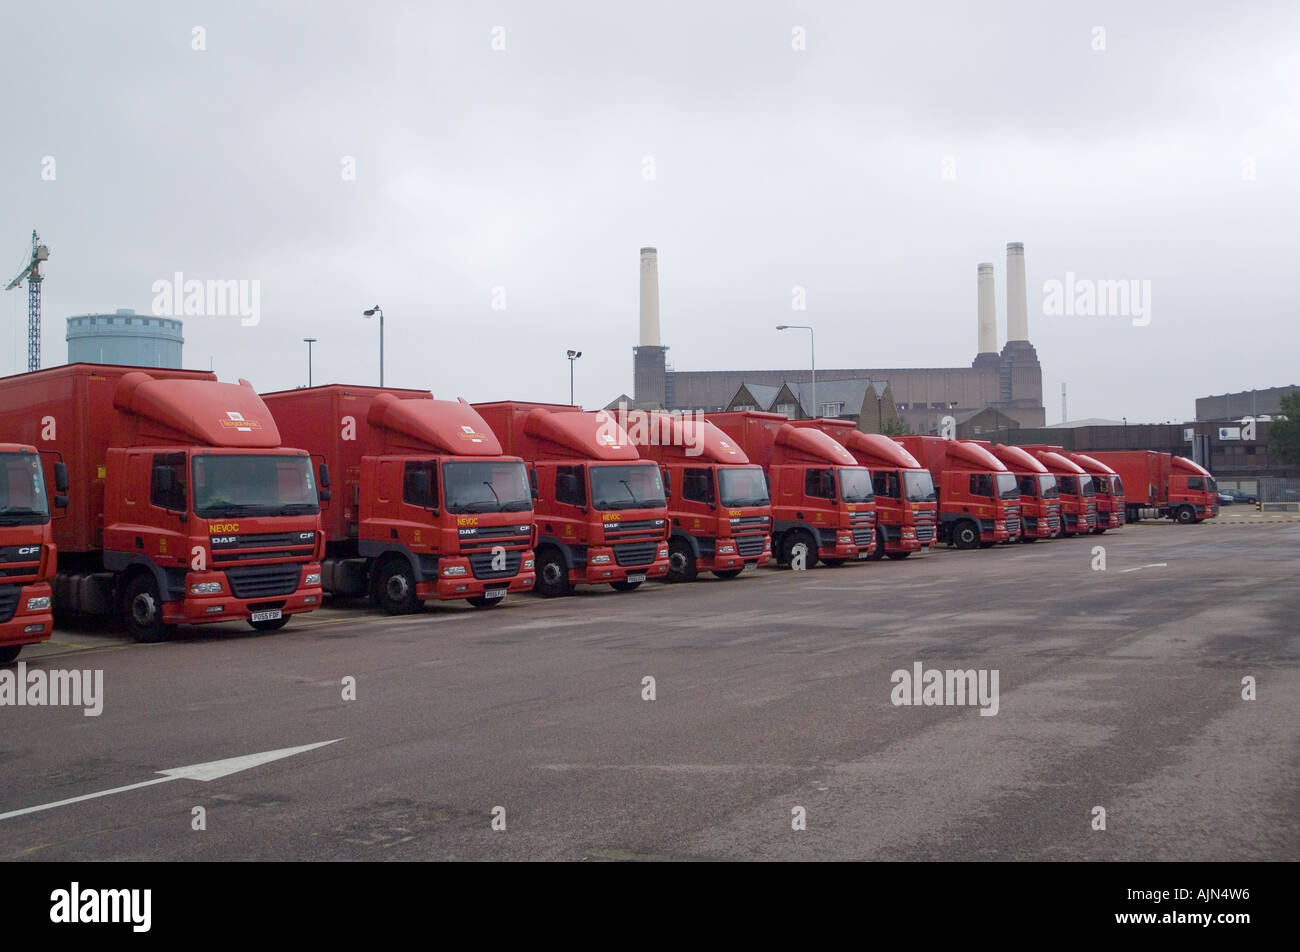 Royal Mail camions dans une rangée Banque D'Images